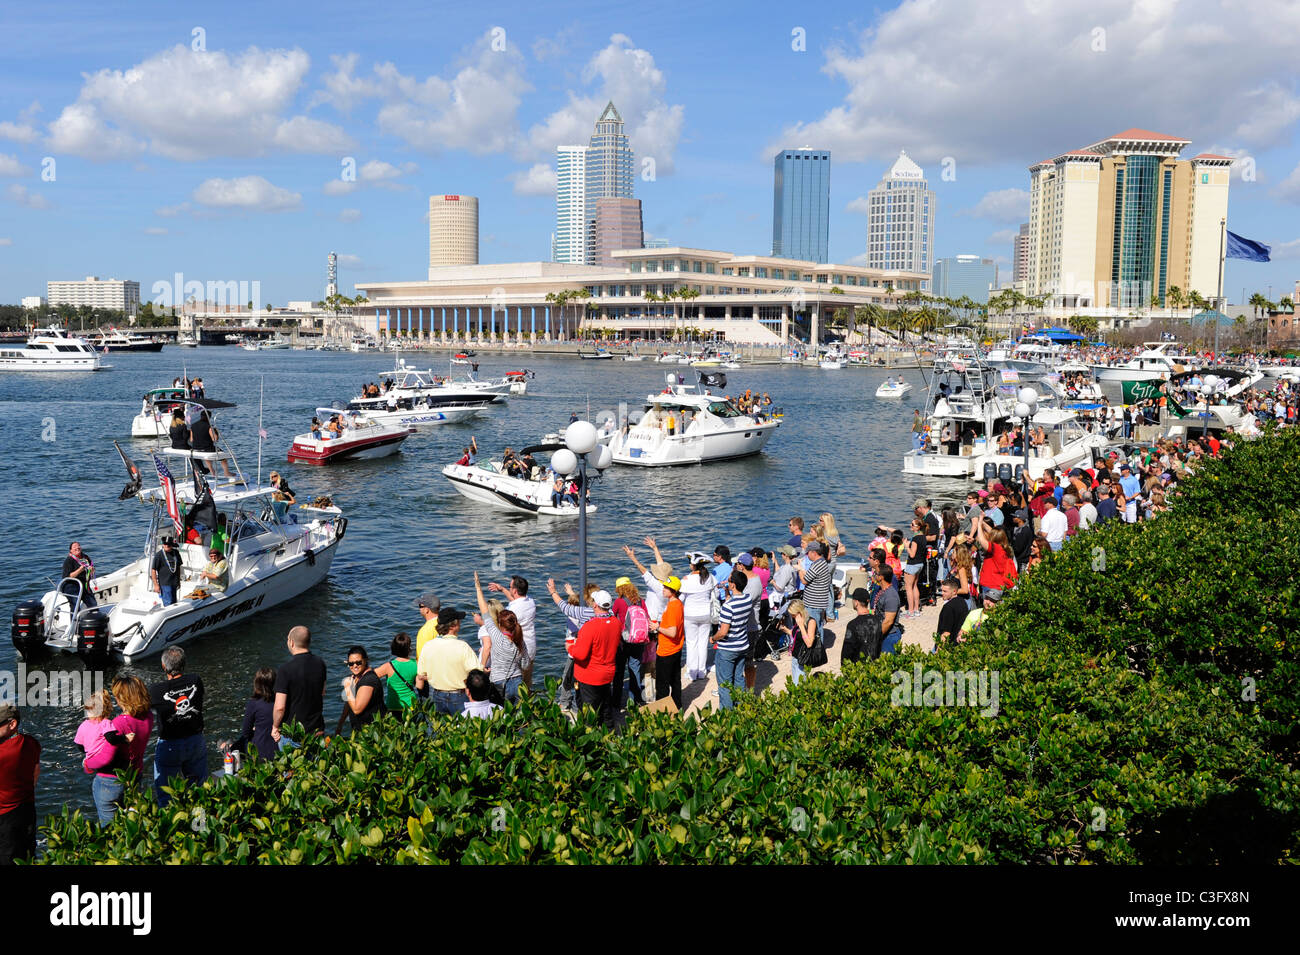 Crowd at Tampa Gasparilla Pirate Festival Florida Stock Photo